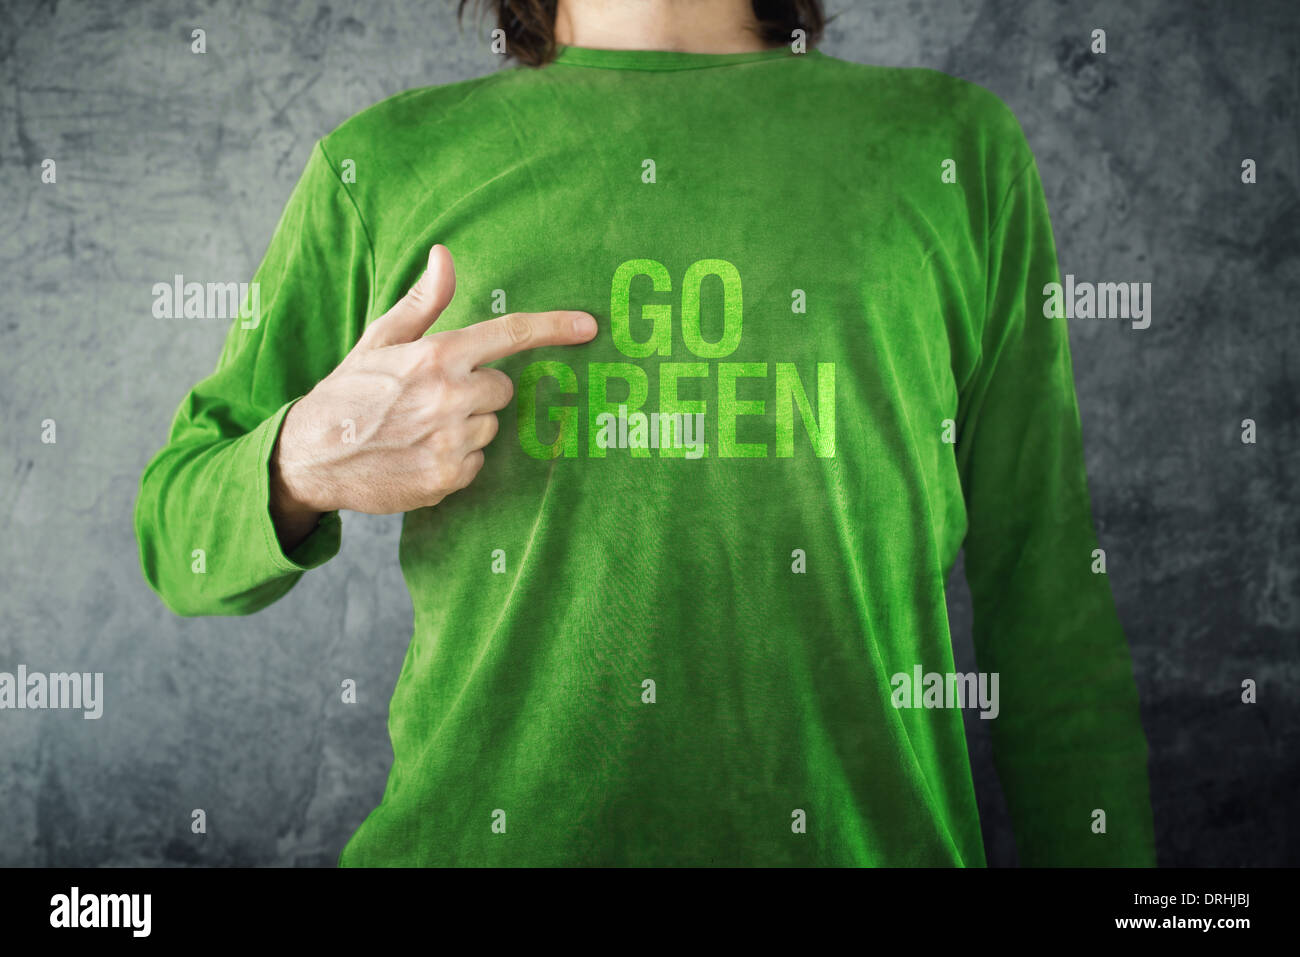 Homme pointant à passer au vert, titre imprimé sur sa chemise, mode de vie sain concept. Banque D'Images